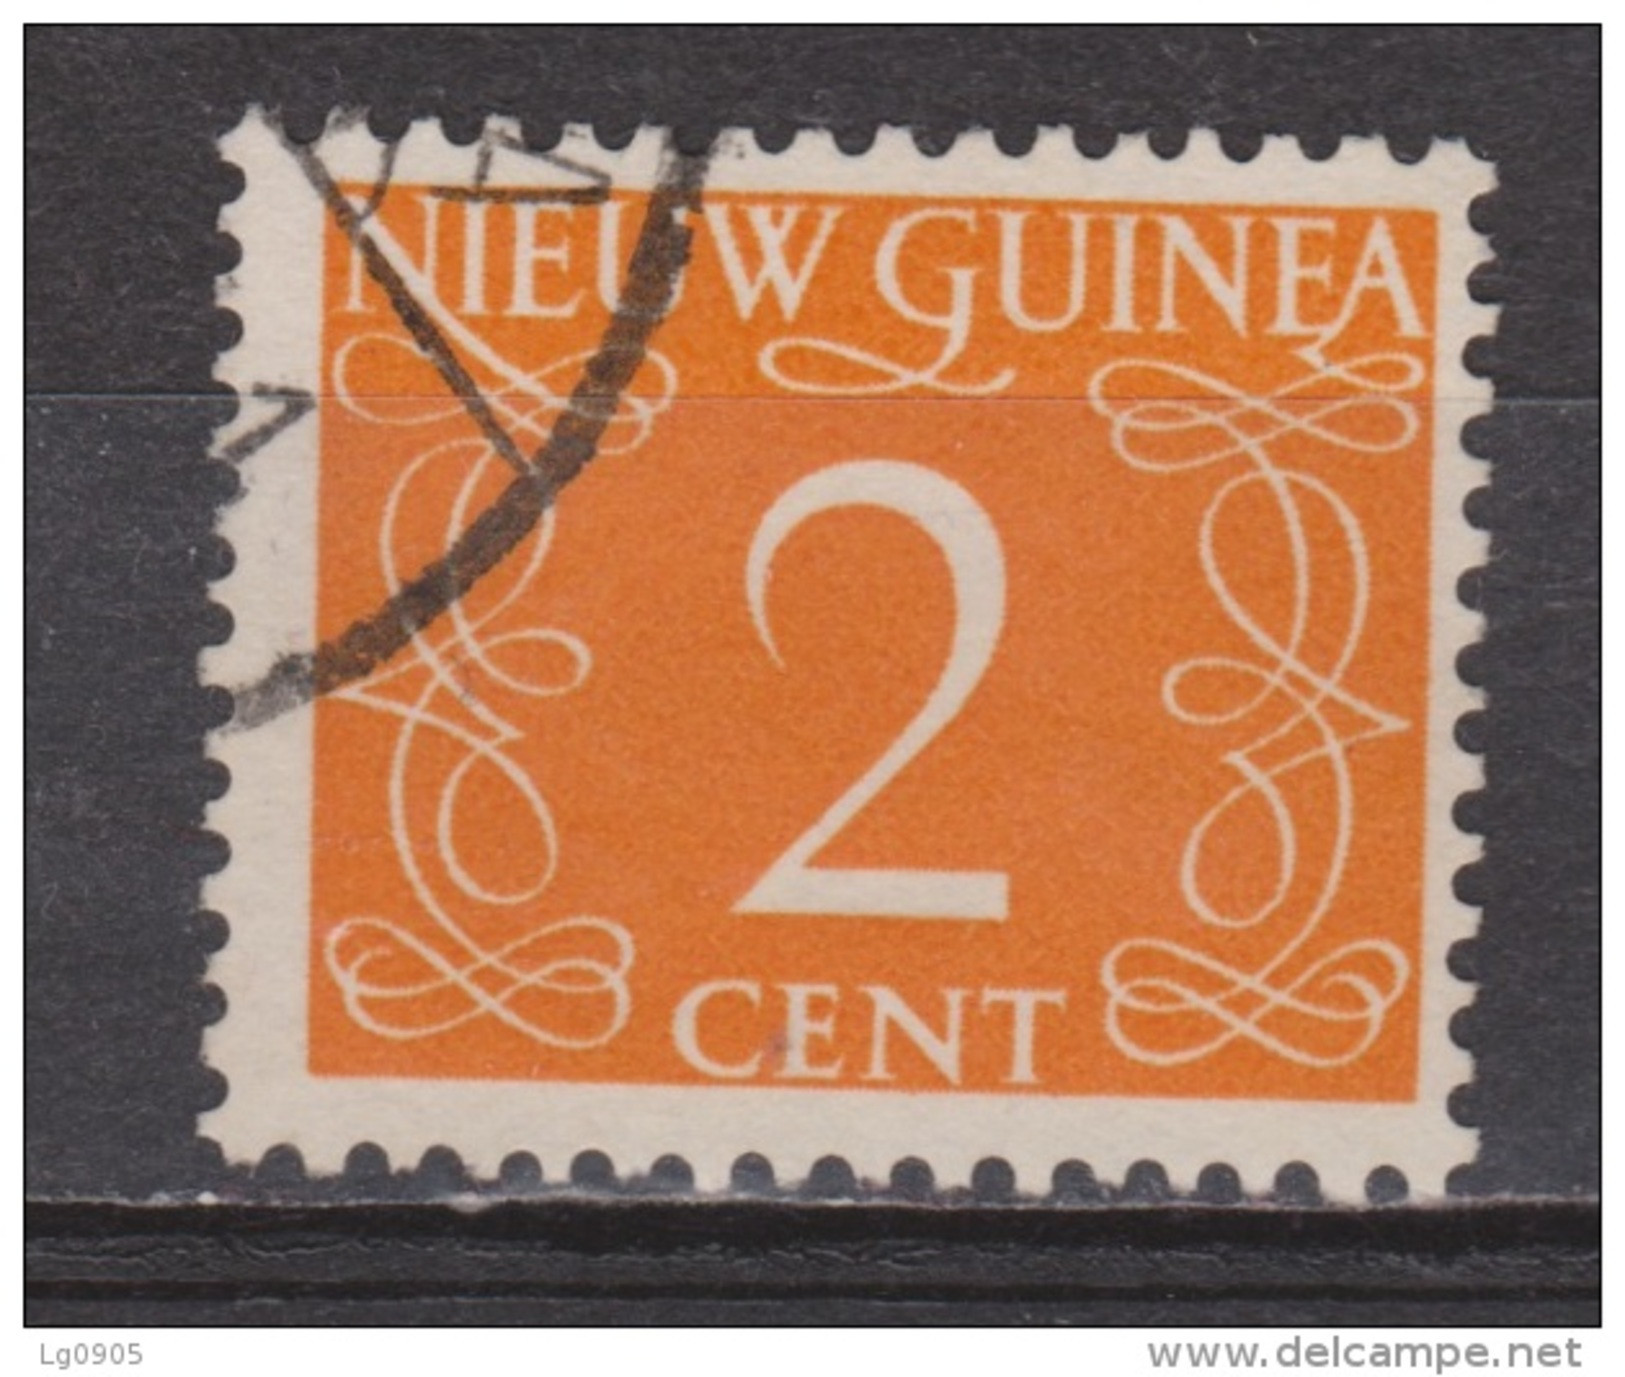 Nederlands Nieuw Guinea 2 Used ; Cijfer 1950 ; NOW ALL STAMPS OF NETHERLANDS NEW GUINEA - Niederländisch-Neuguinea